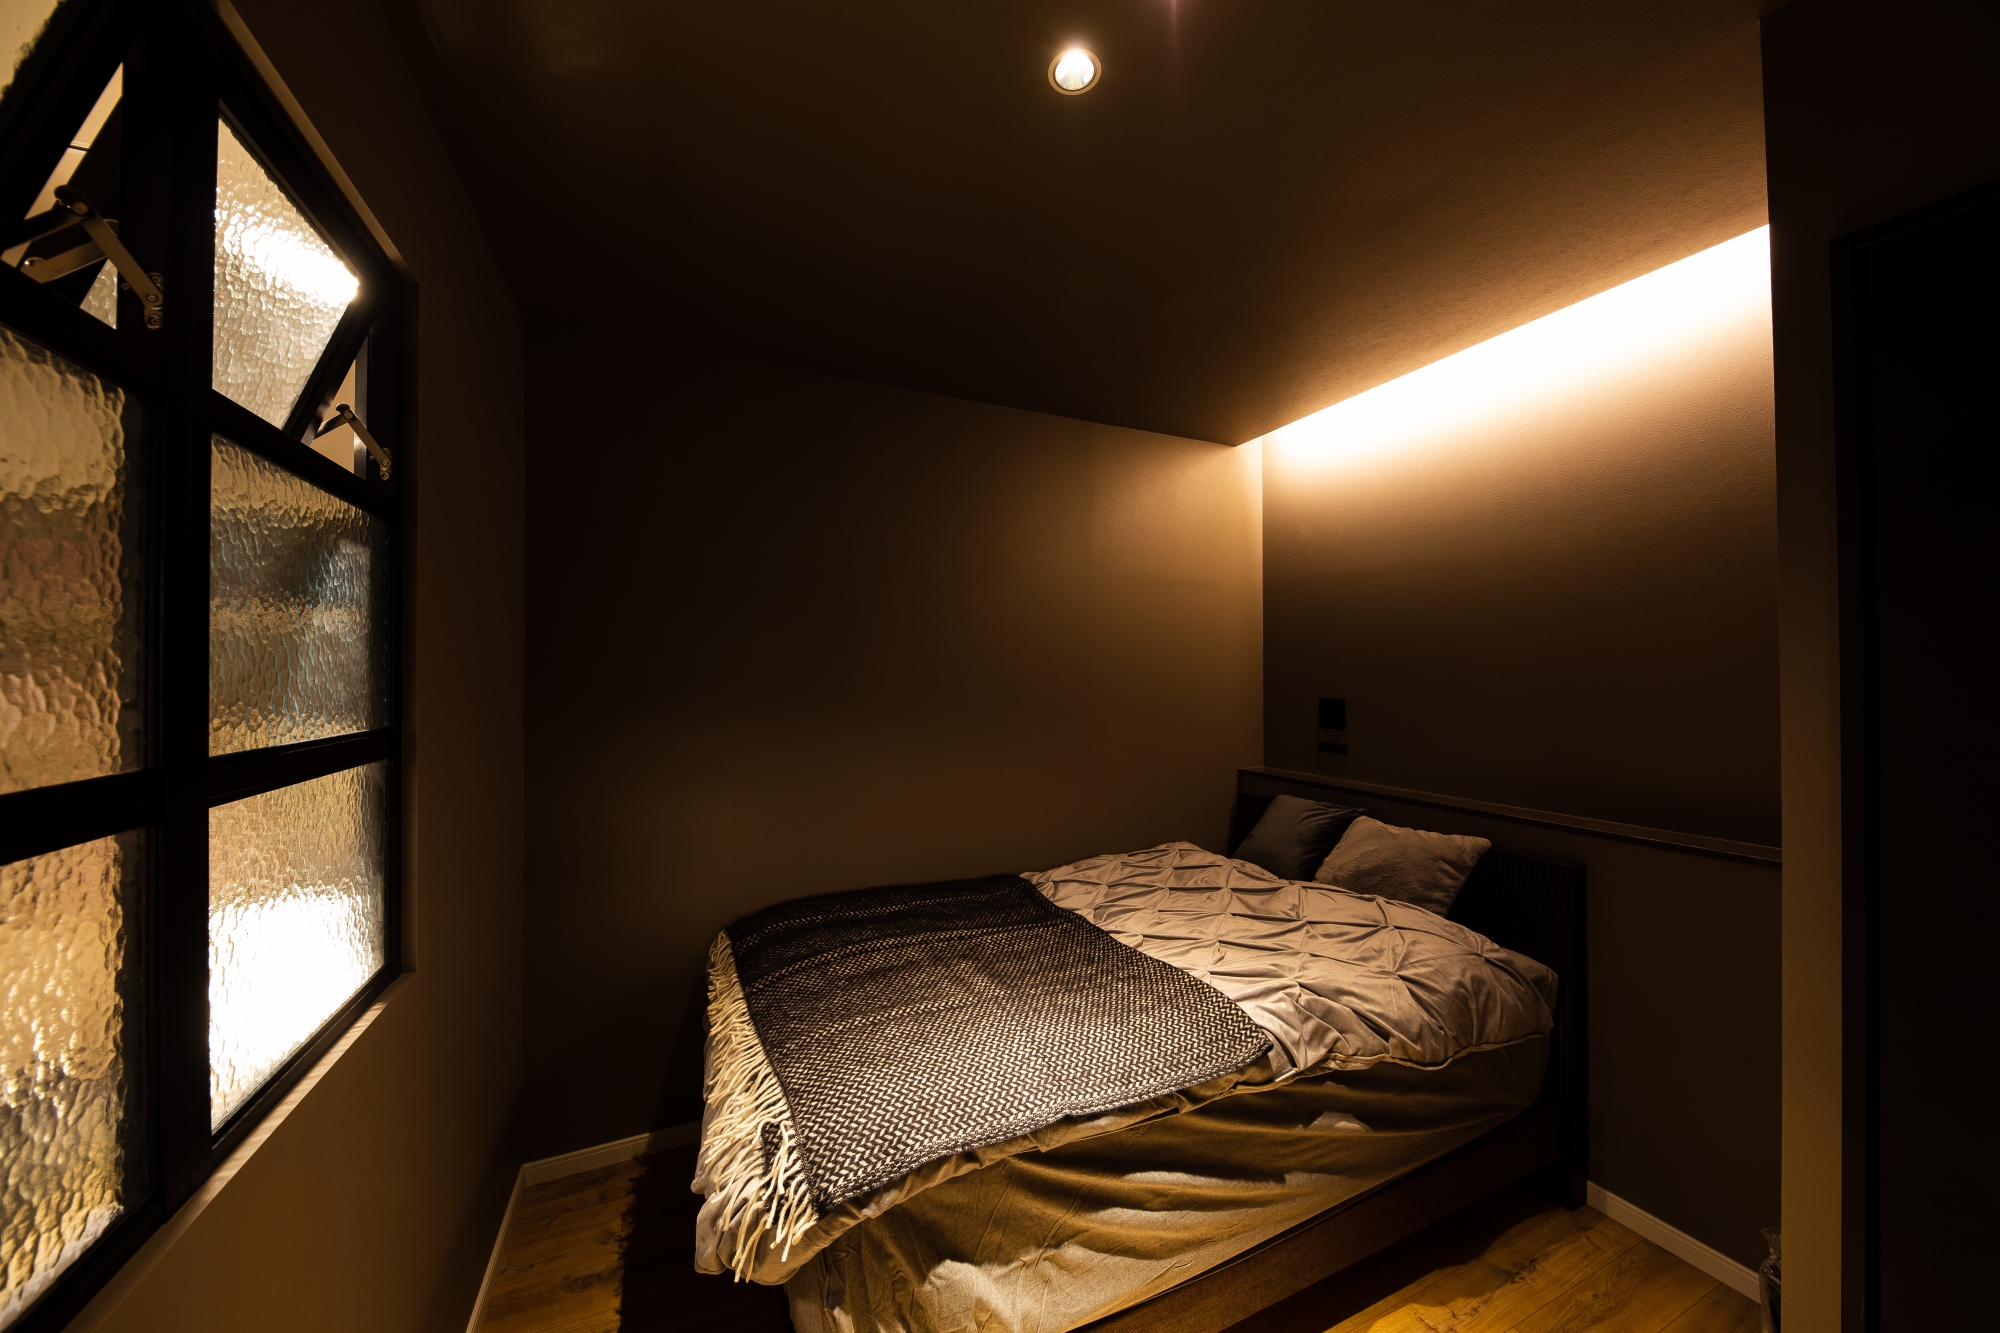 コーニス照明とグレーのクロスで落ち着いた雰囲気の寝室です